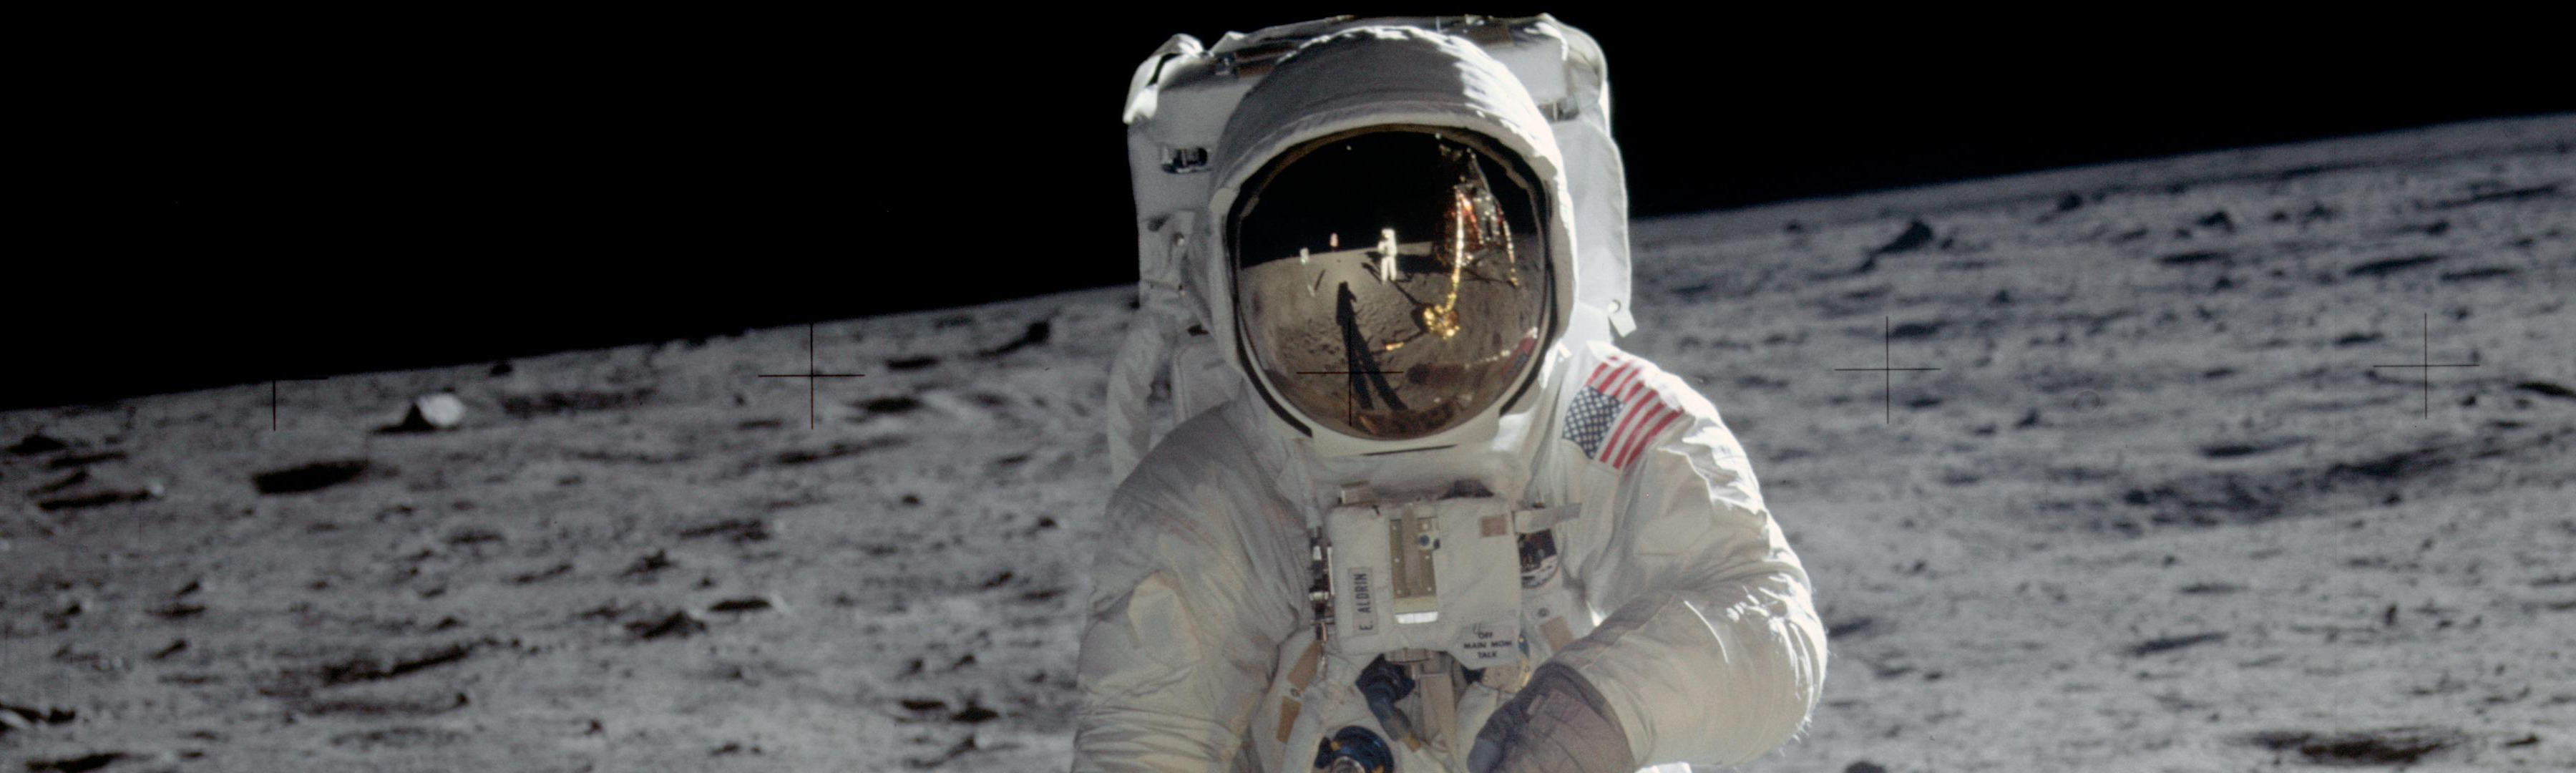 космическое пространство, астронавты, Moon Landing - обои на рабочий стол